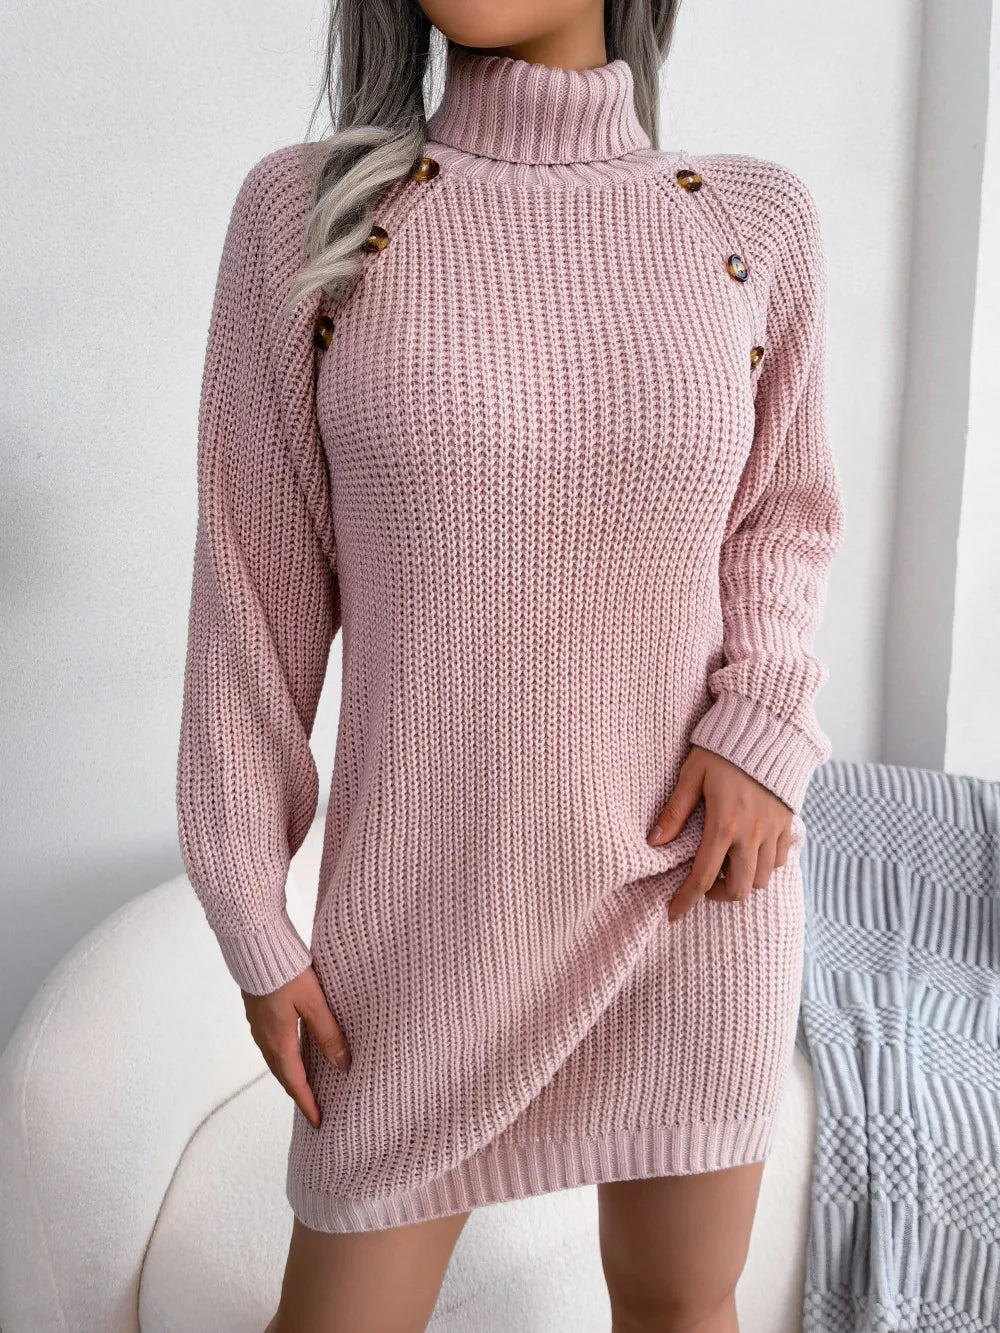 Turtleneck Sweater Dress: Elegant Long Sleeve Pullover for Women